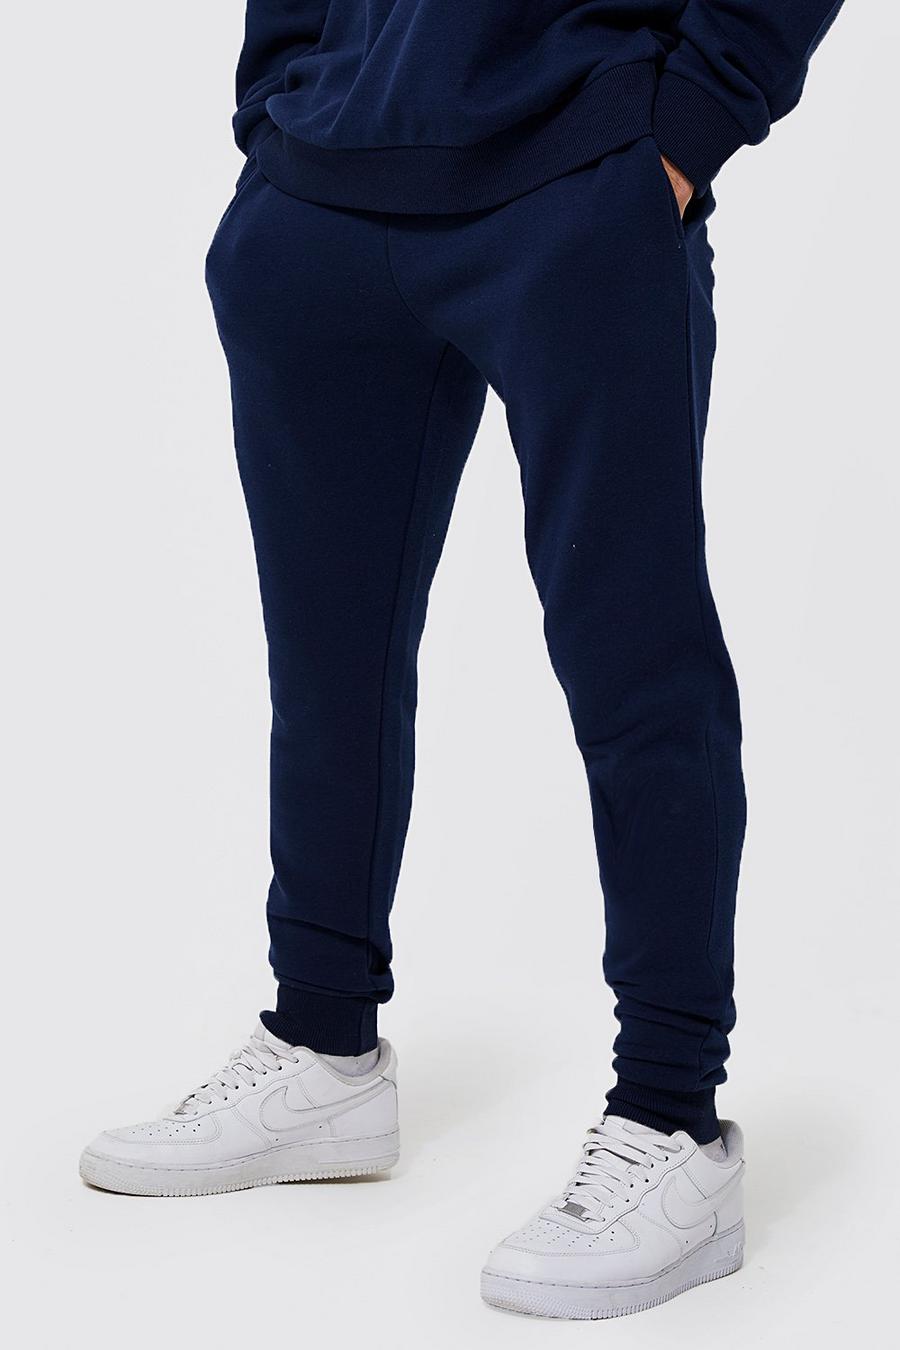 Pantalón deportivo pitillo con algodón ecológico, Navy azul marino